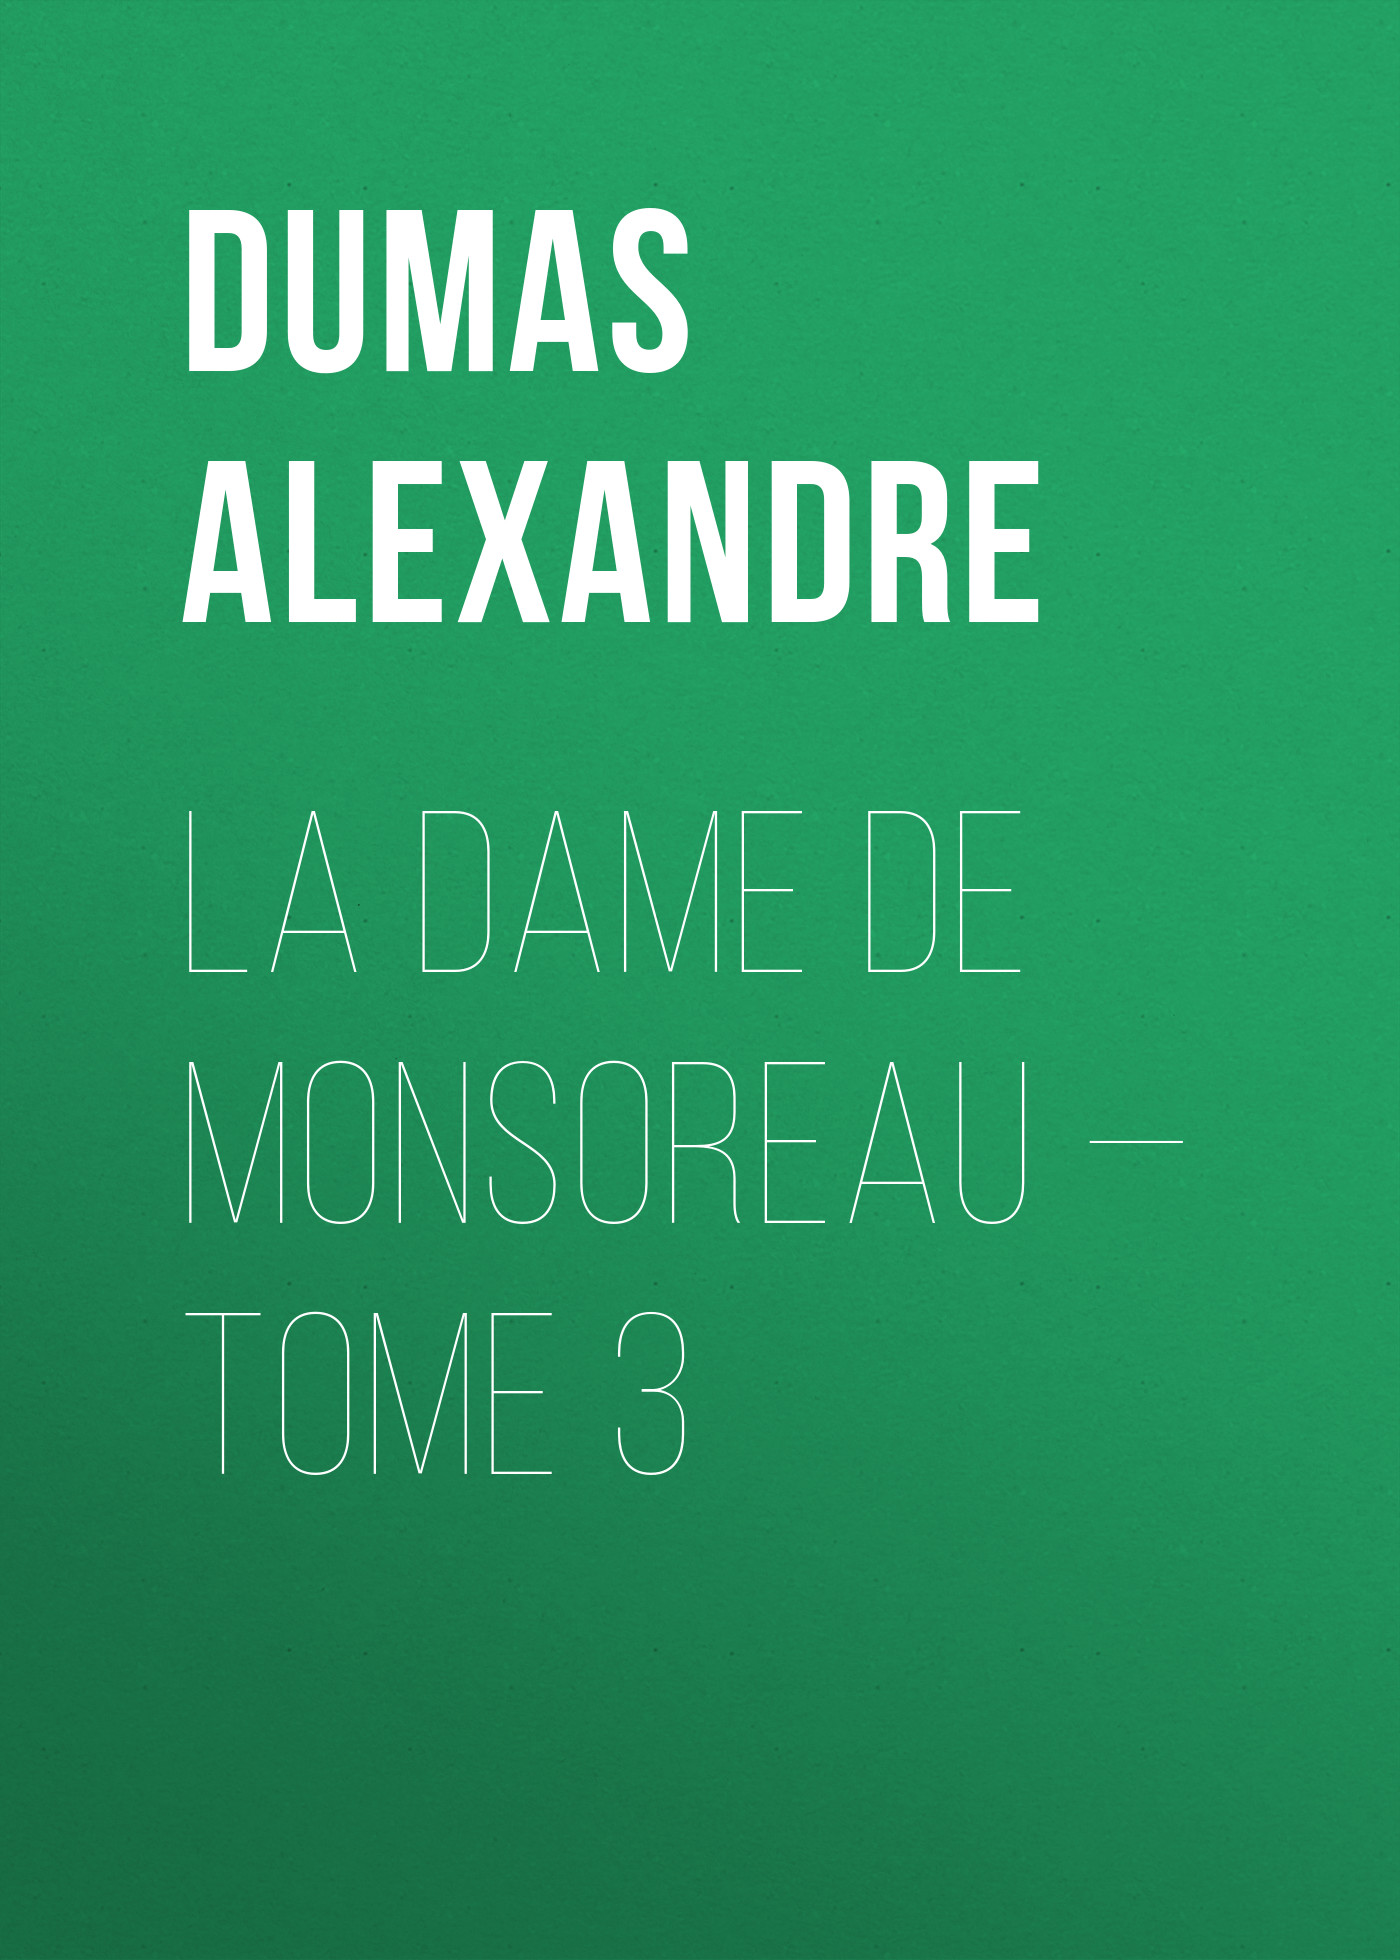 Книга La dame de Monsoreau – Tome 3 из серии , созданная Alexandre Dumas, может относится к жанру Литература 19 века, Зарубежная старинная литература, Зарубежная классика. Стоимость электронной книги La dame de Monsoreau – Tome 3 с идентификатором 25201775 составляет 0 руб.